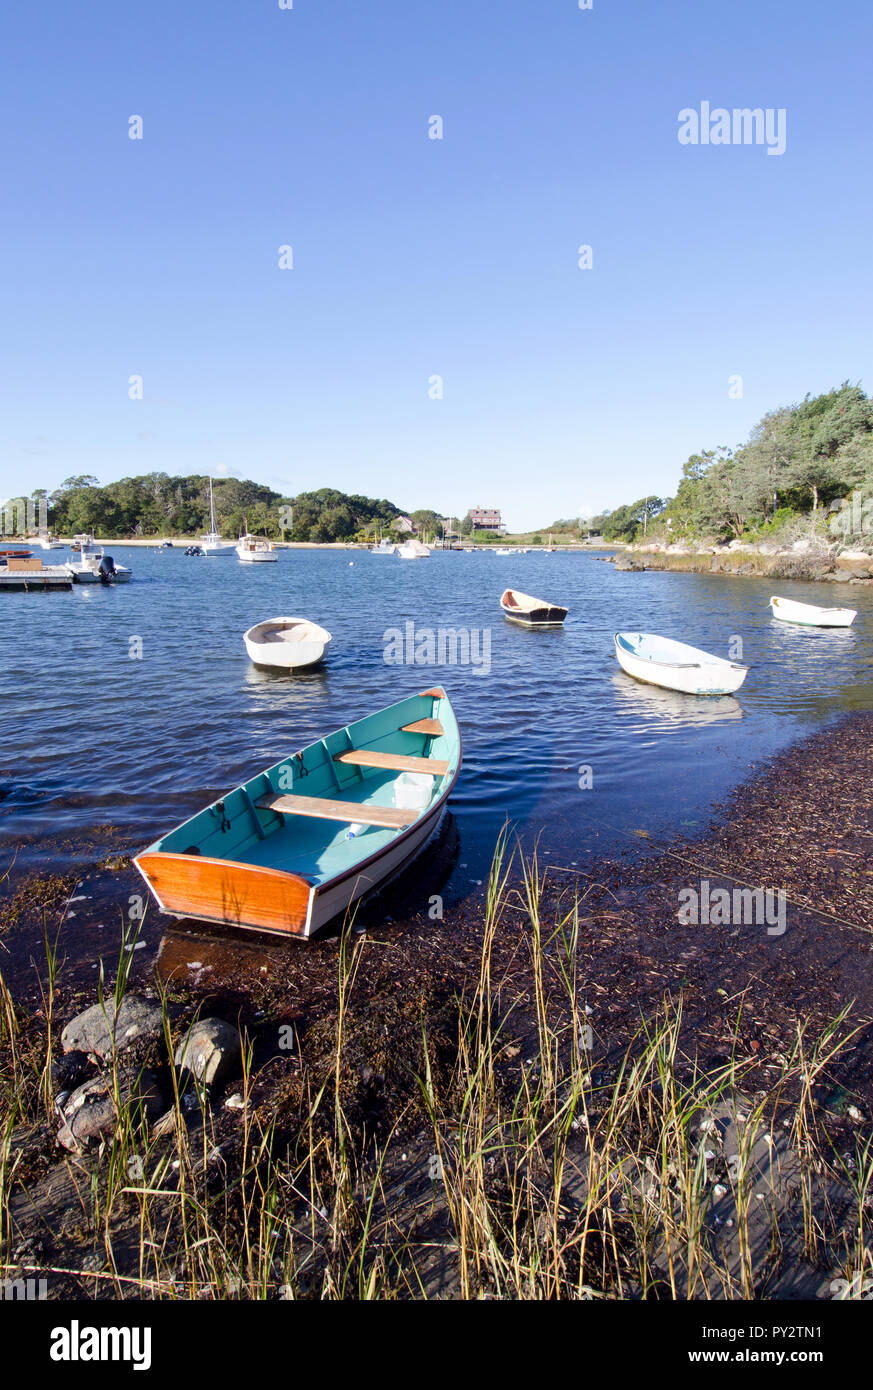 Quiissett porto di Falmouth, Cape Cod, Massachusetts, STATI UNITI D'AMERICA con barche su posti barca su un luminoso e soleggiato, cielo blu mattina Foto Stock